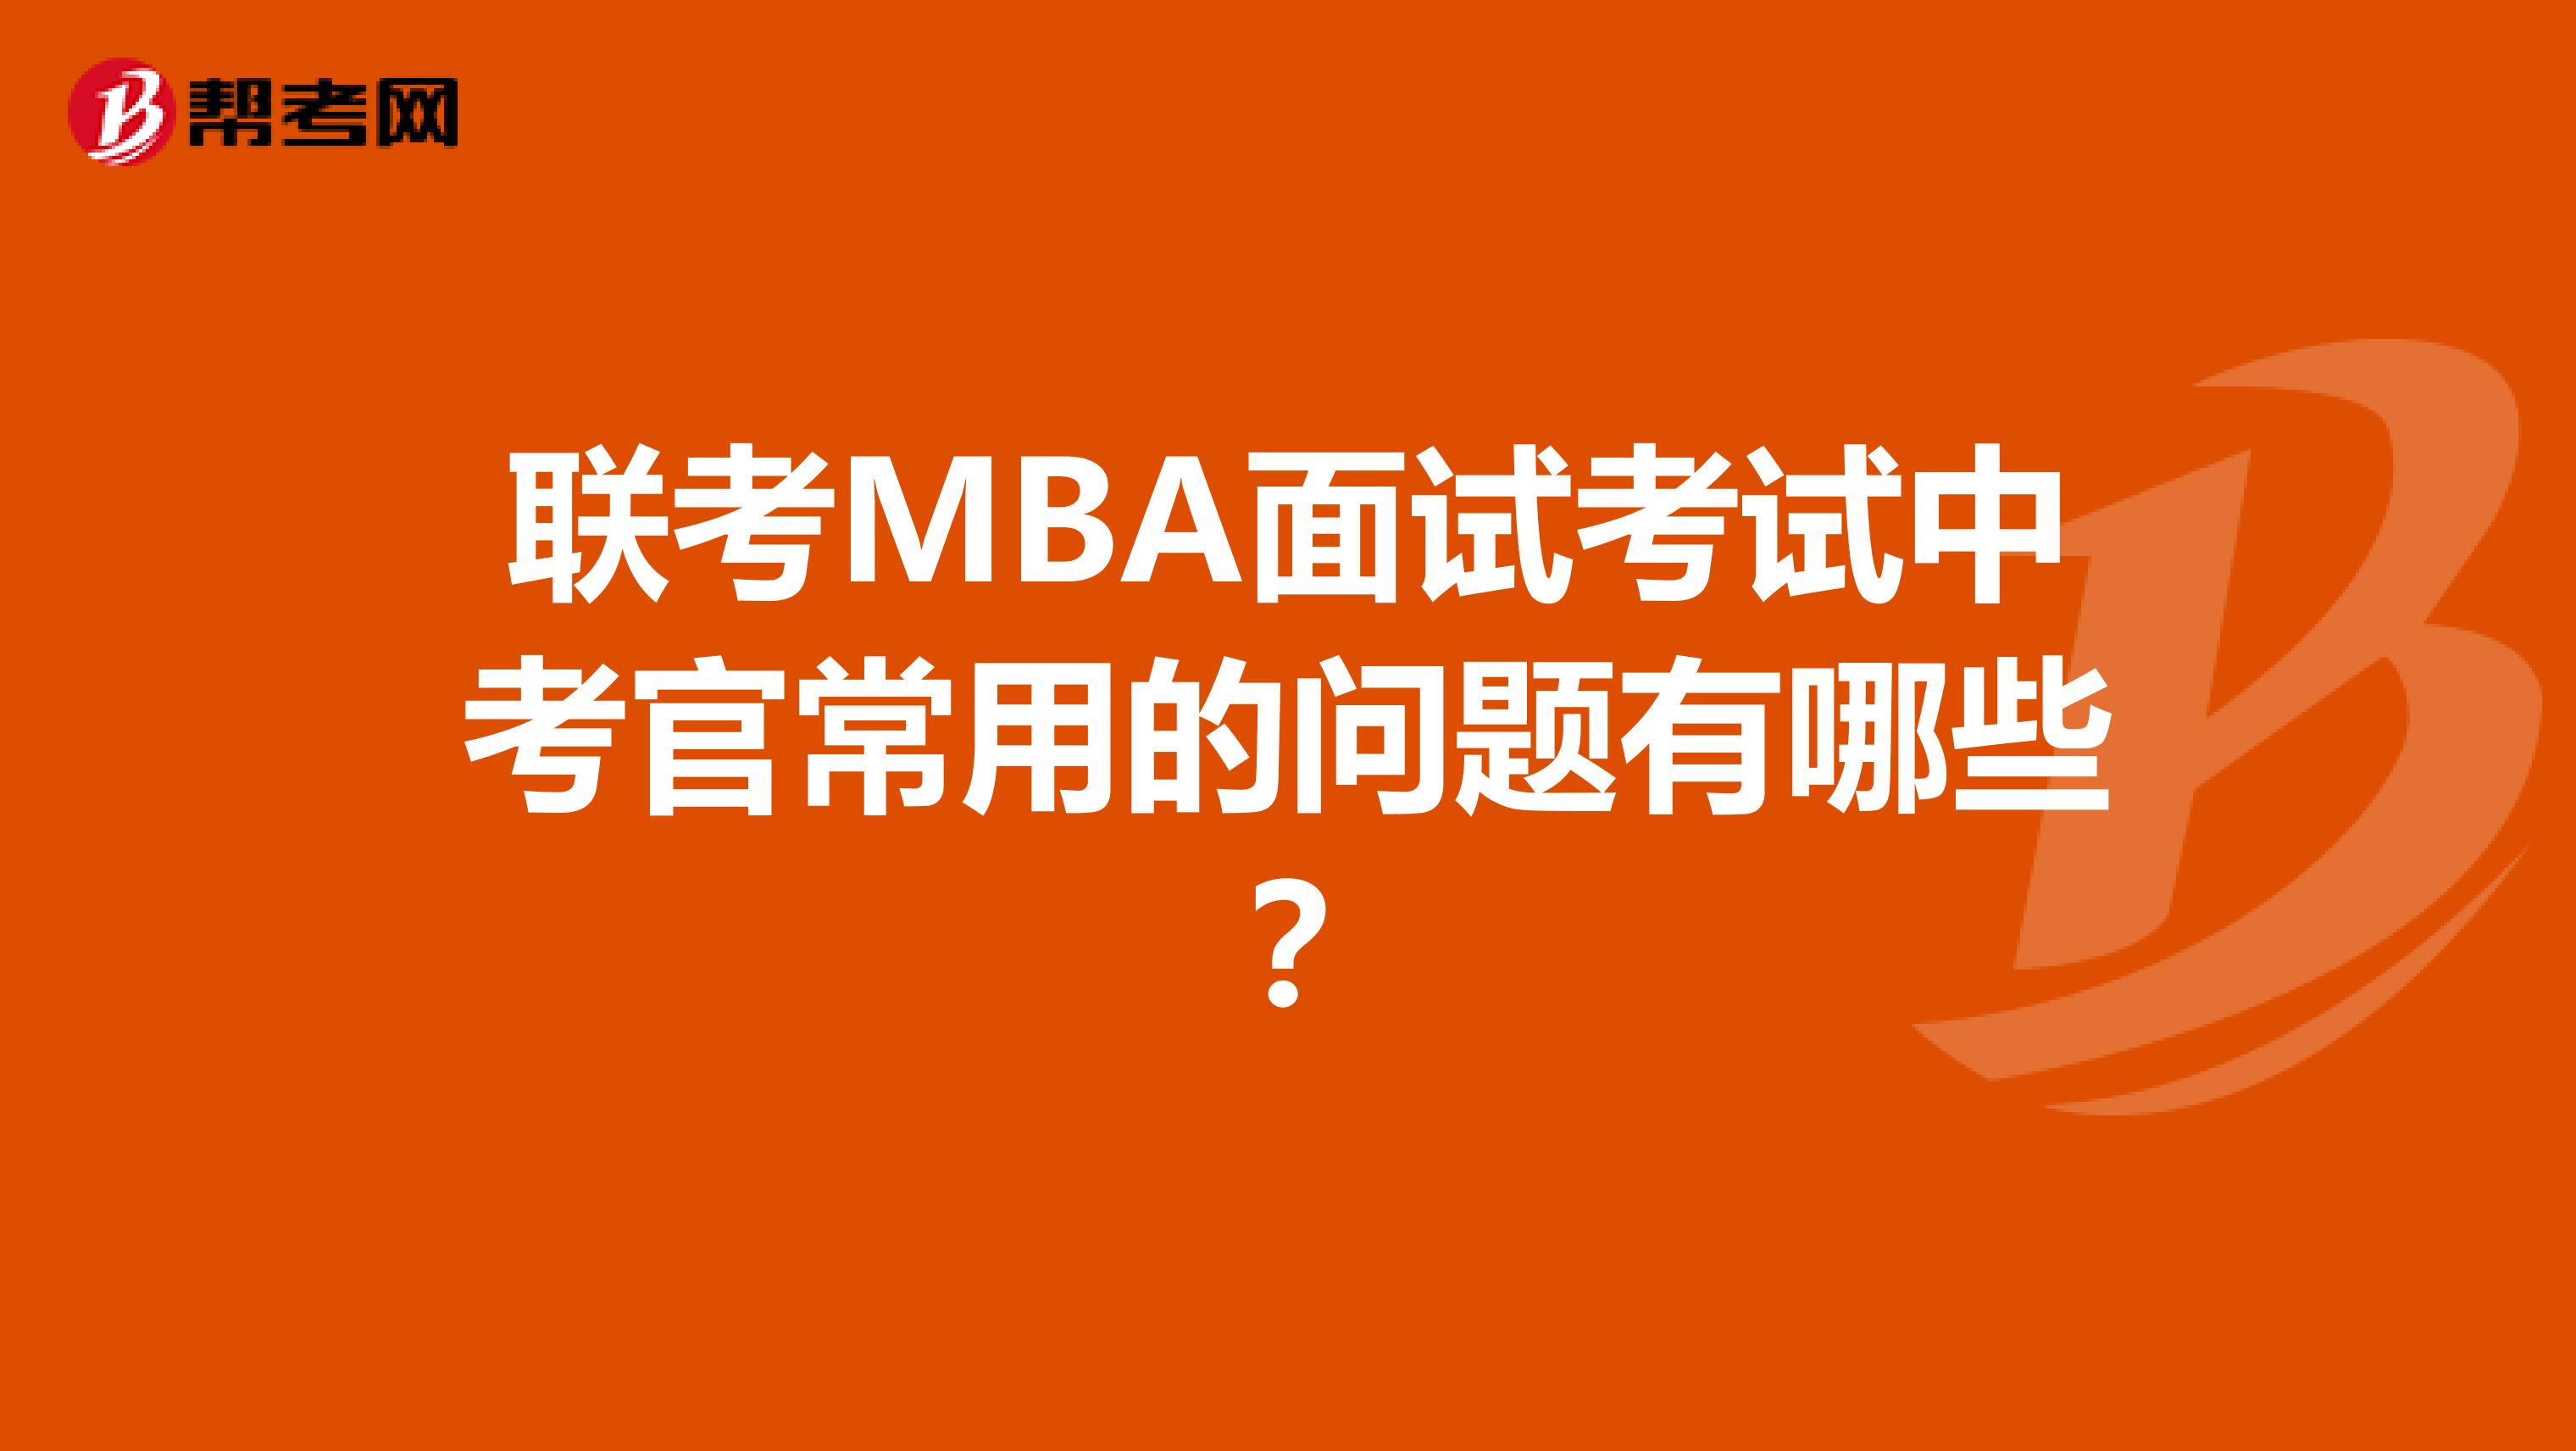 联考MBA面试考试中考官常用的问题有哪些？